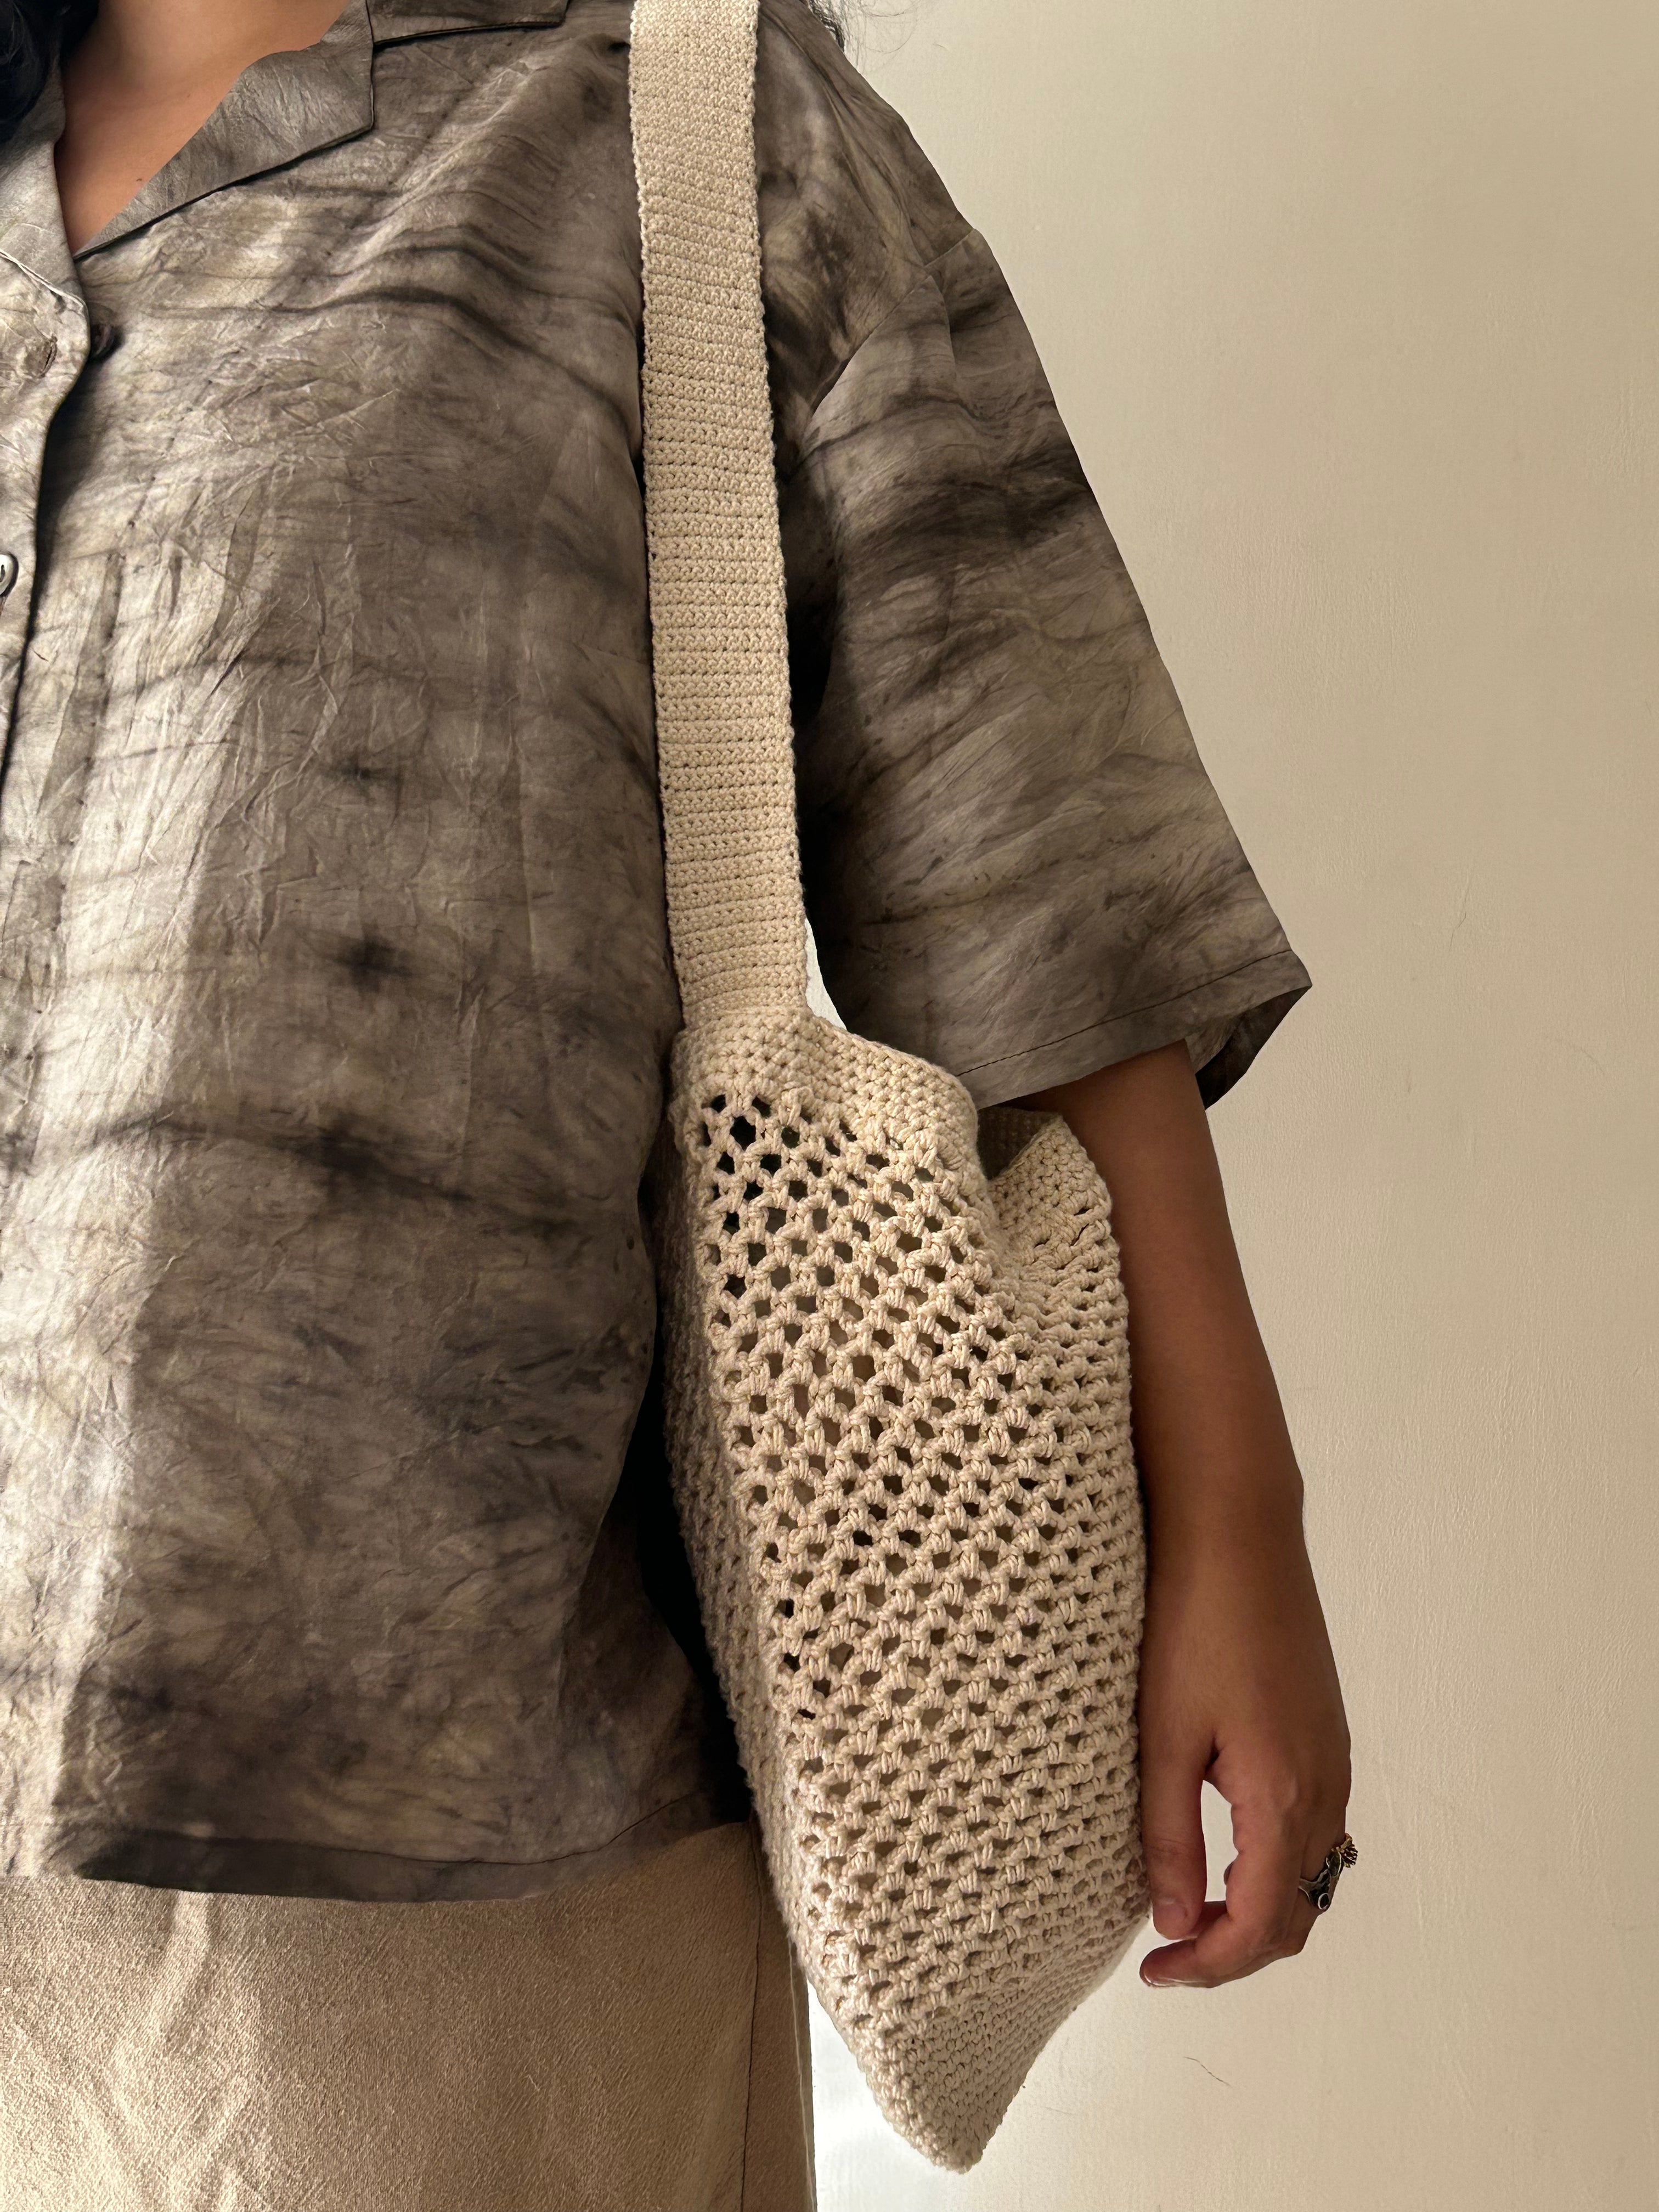 White Market Crochet Bag